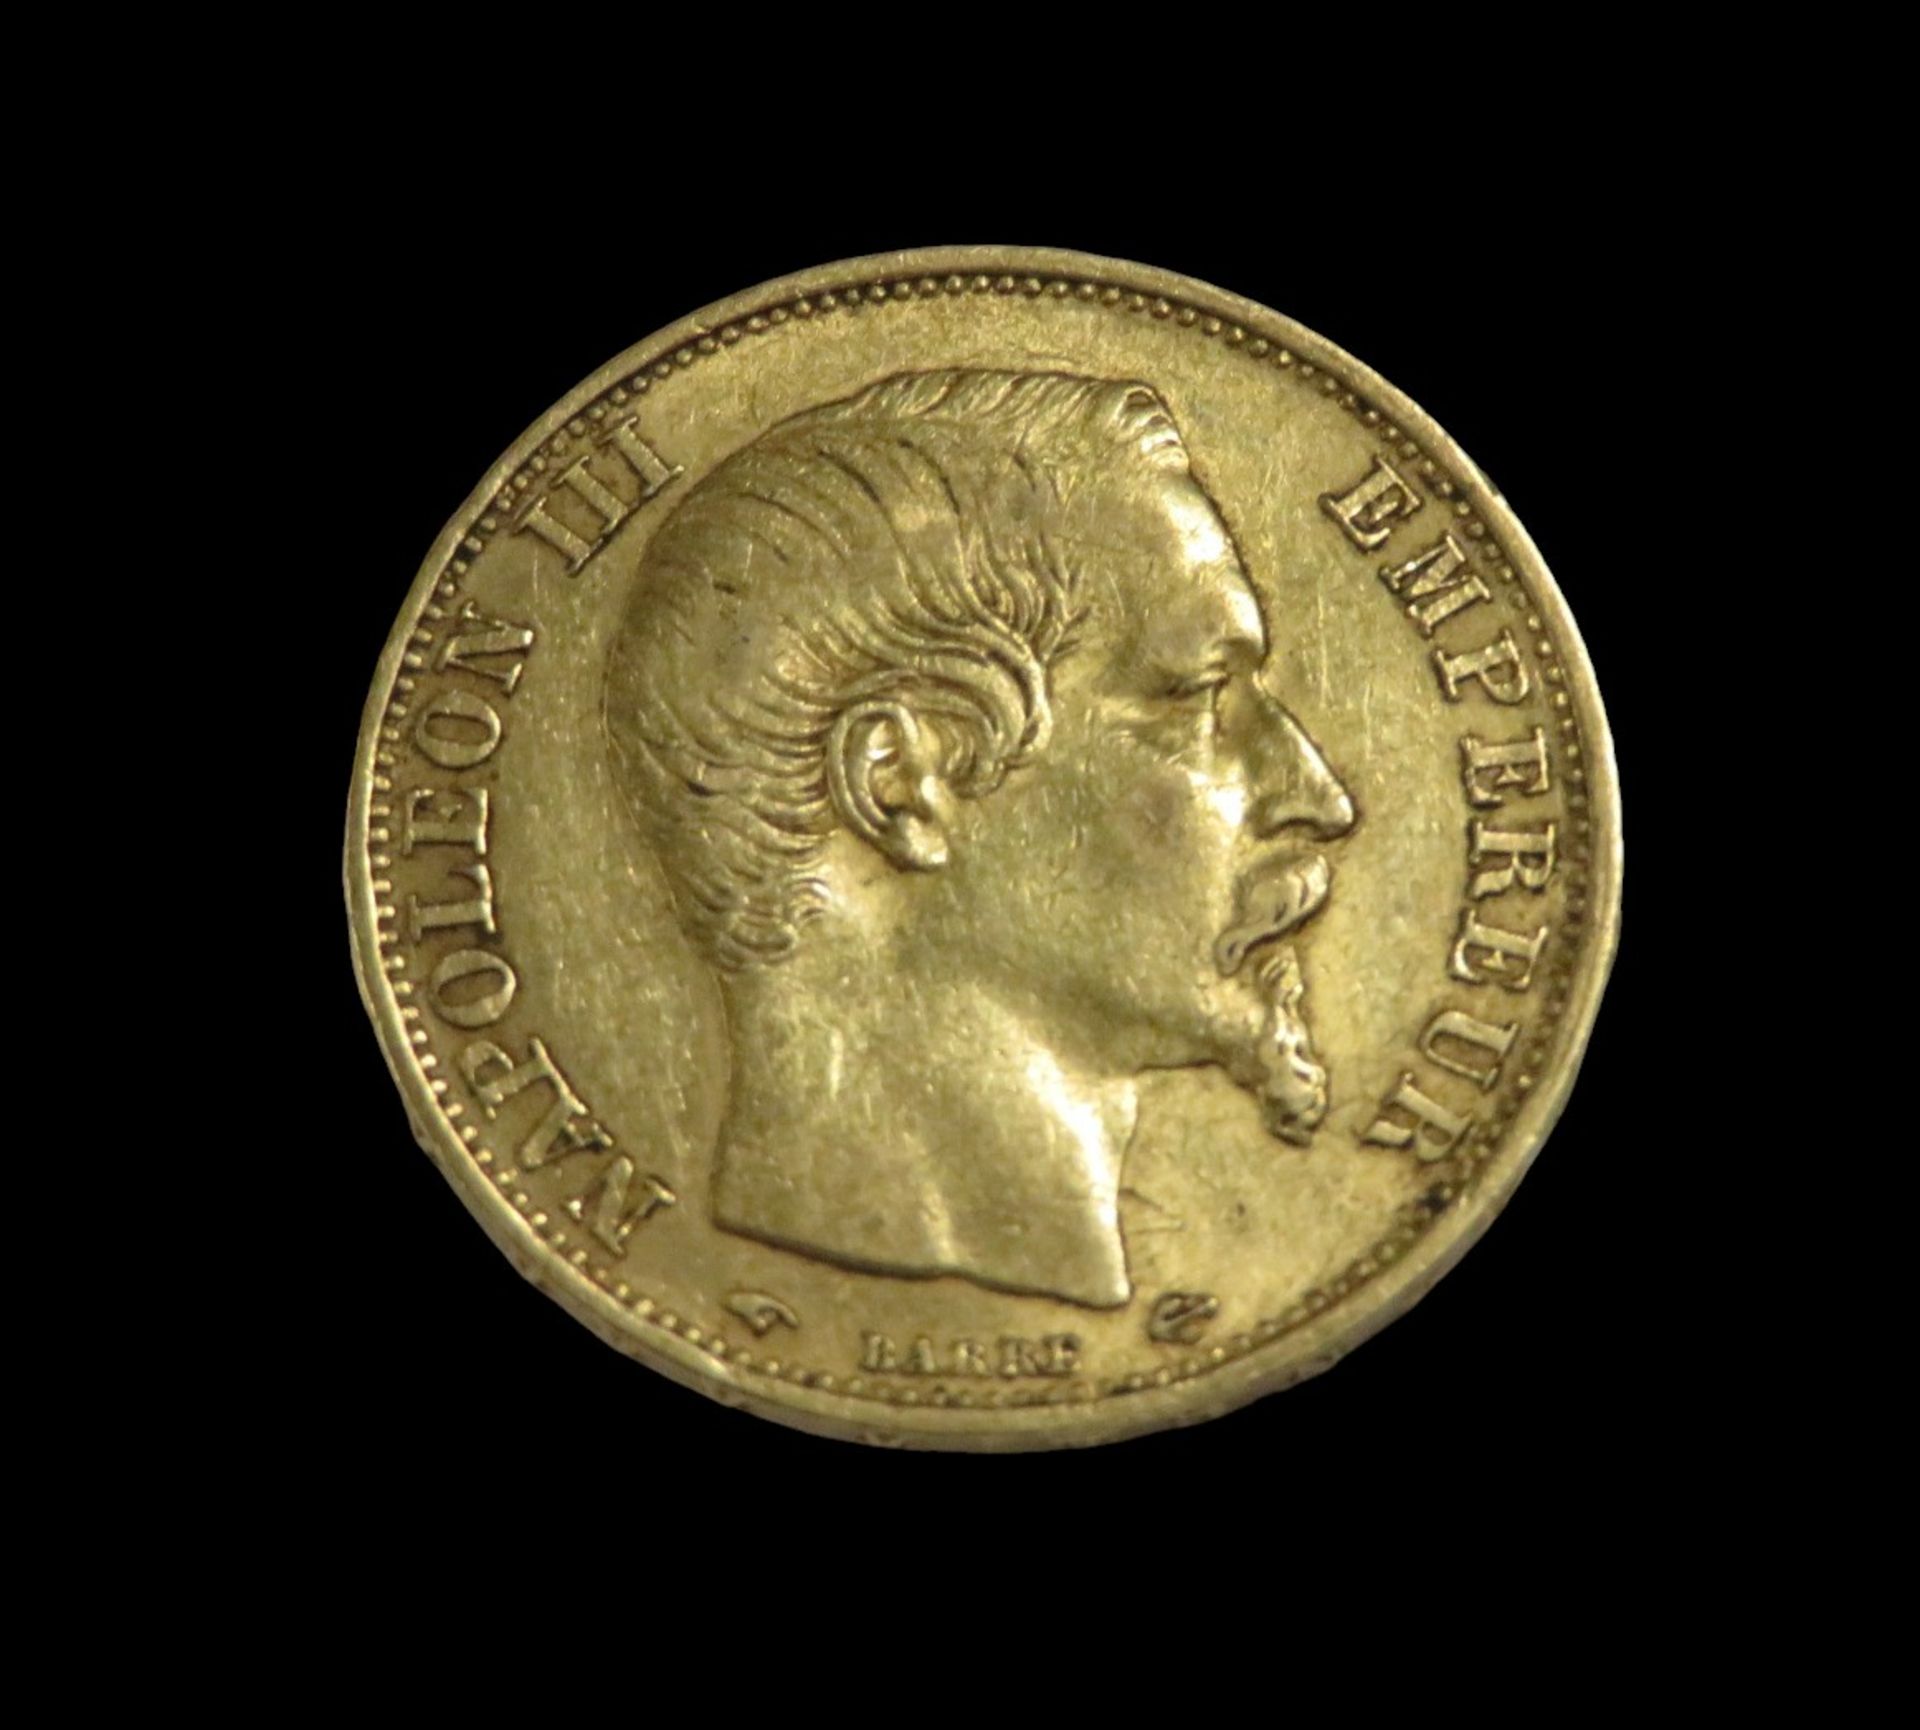 Goldmünze, 20 Francs, Napoleon III, 1859, Gold 900/000, 6,4 g, d 2,1 cm.